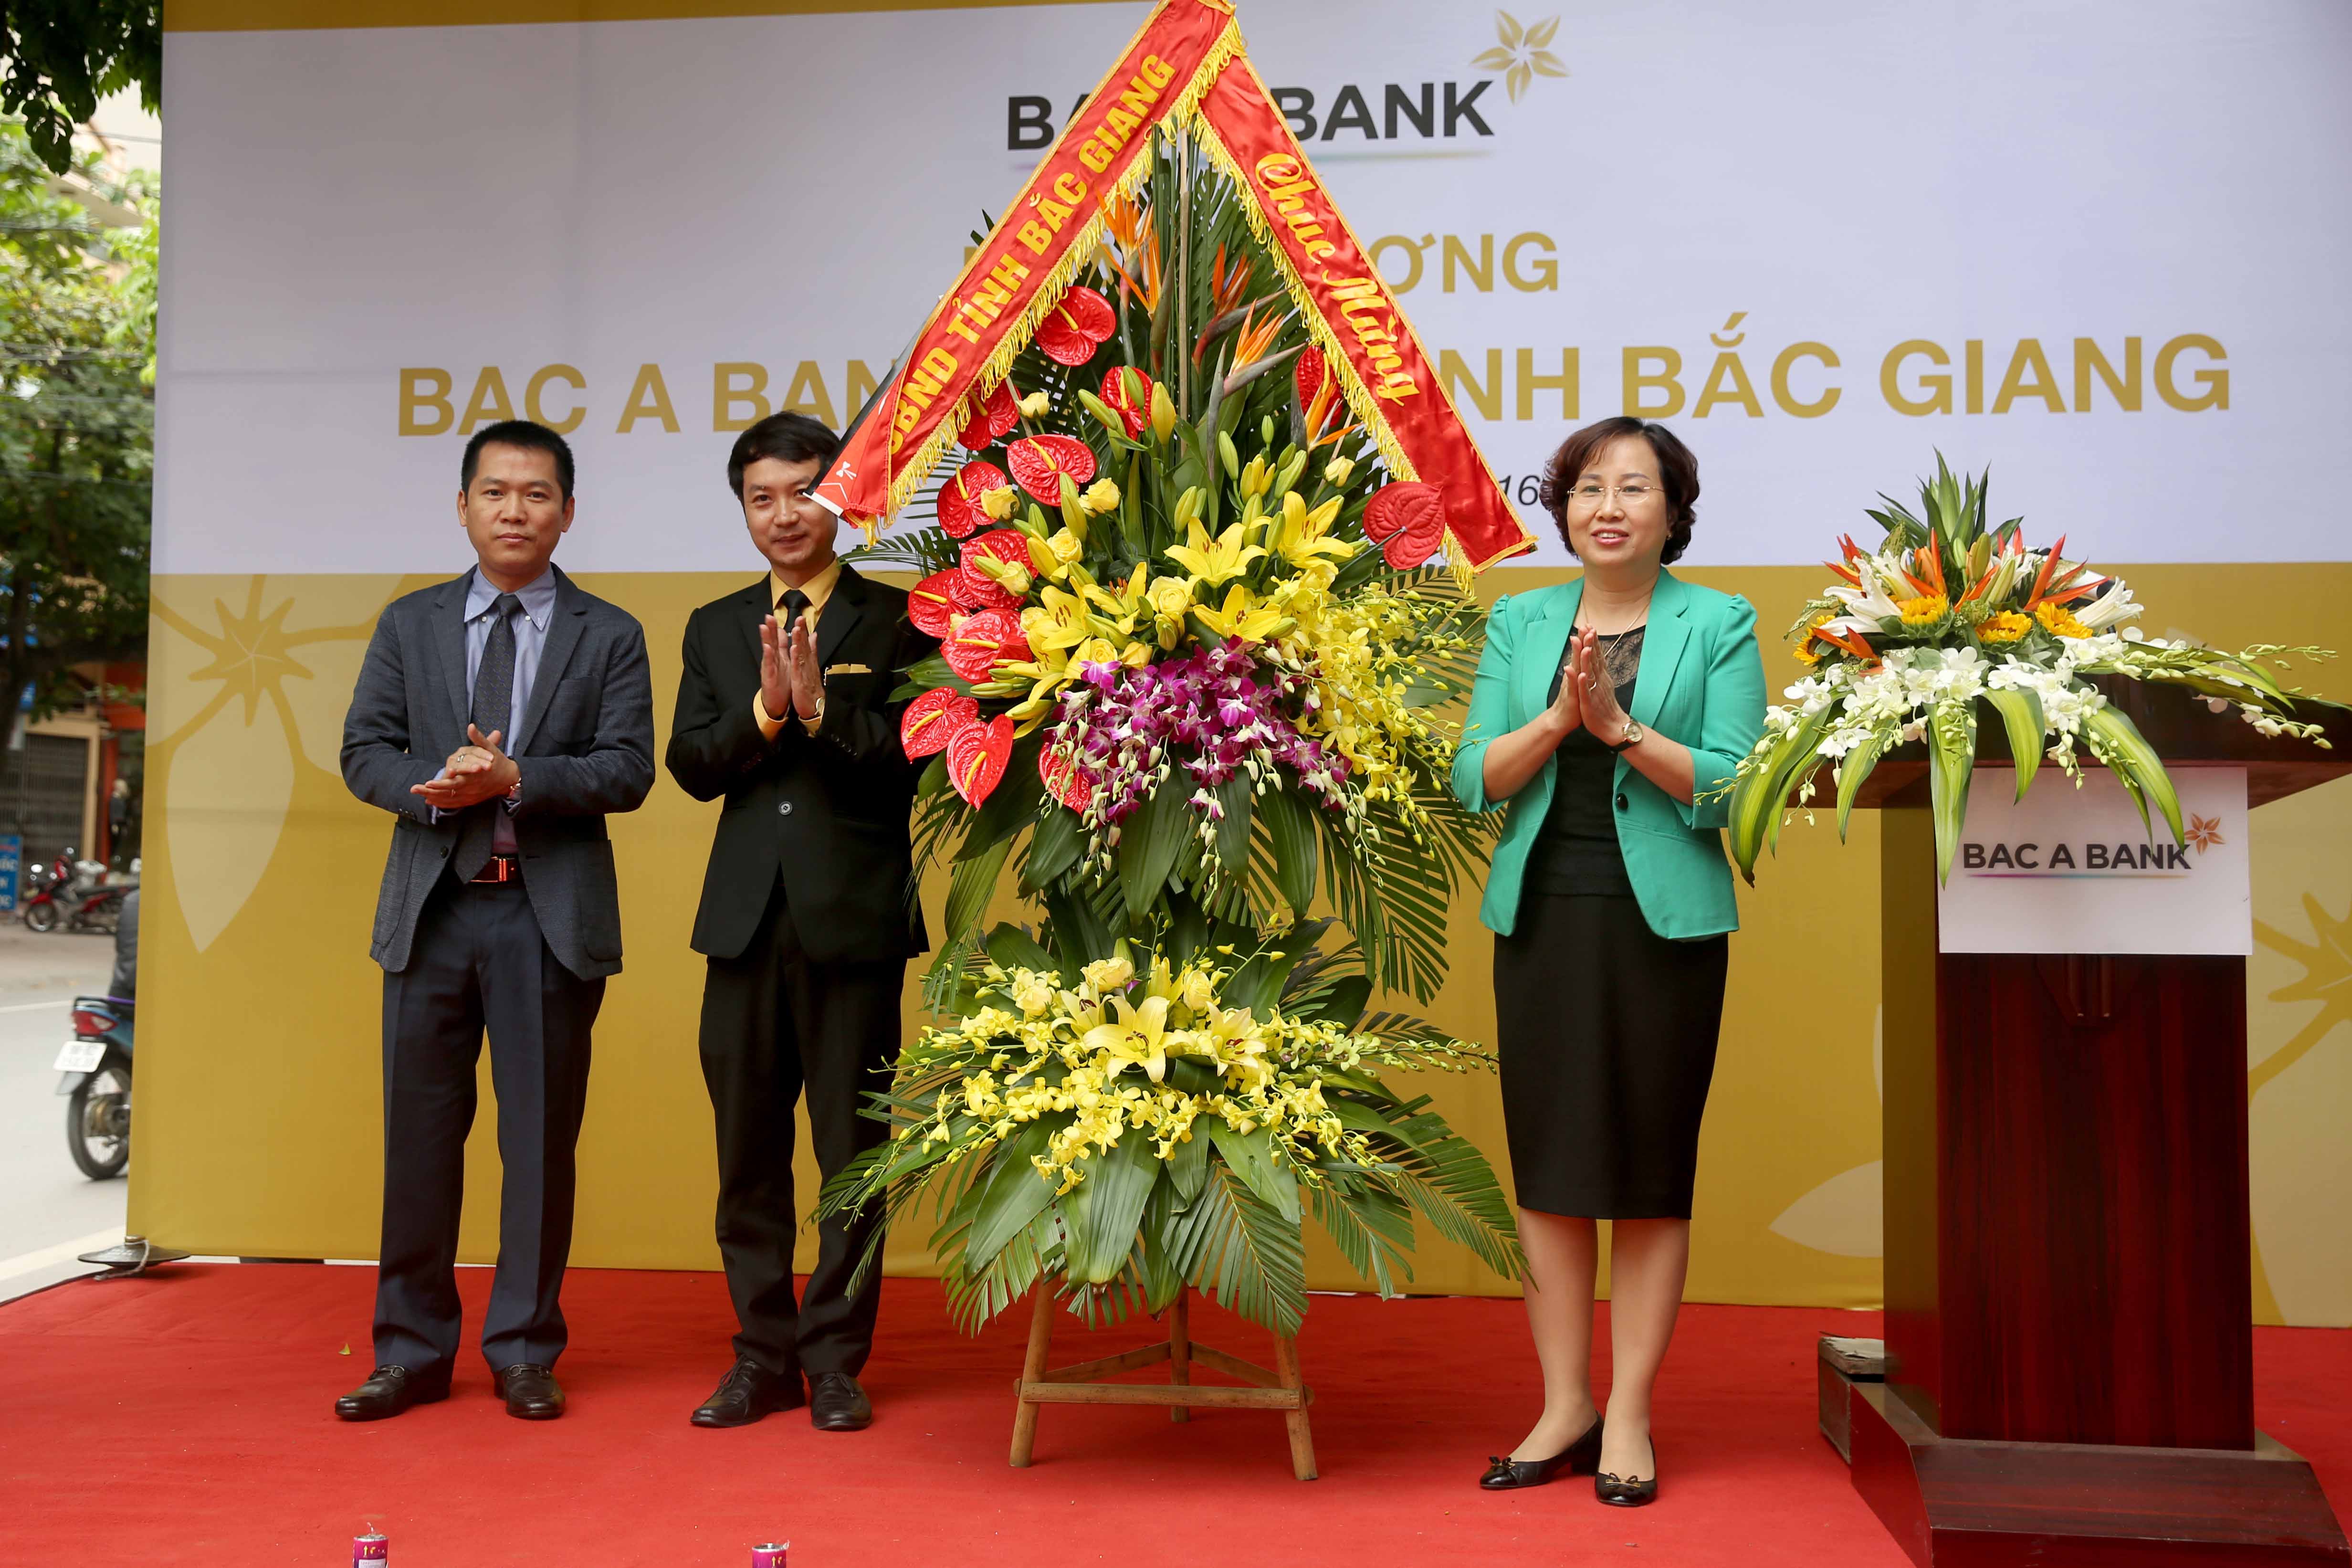 Bà Nguyễn Thị Thu Hà – Phó Chủ tich UBND tỉnh Bắc Giang tặng hoa lãnh đạo Chi nhánh Bắc Giang 